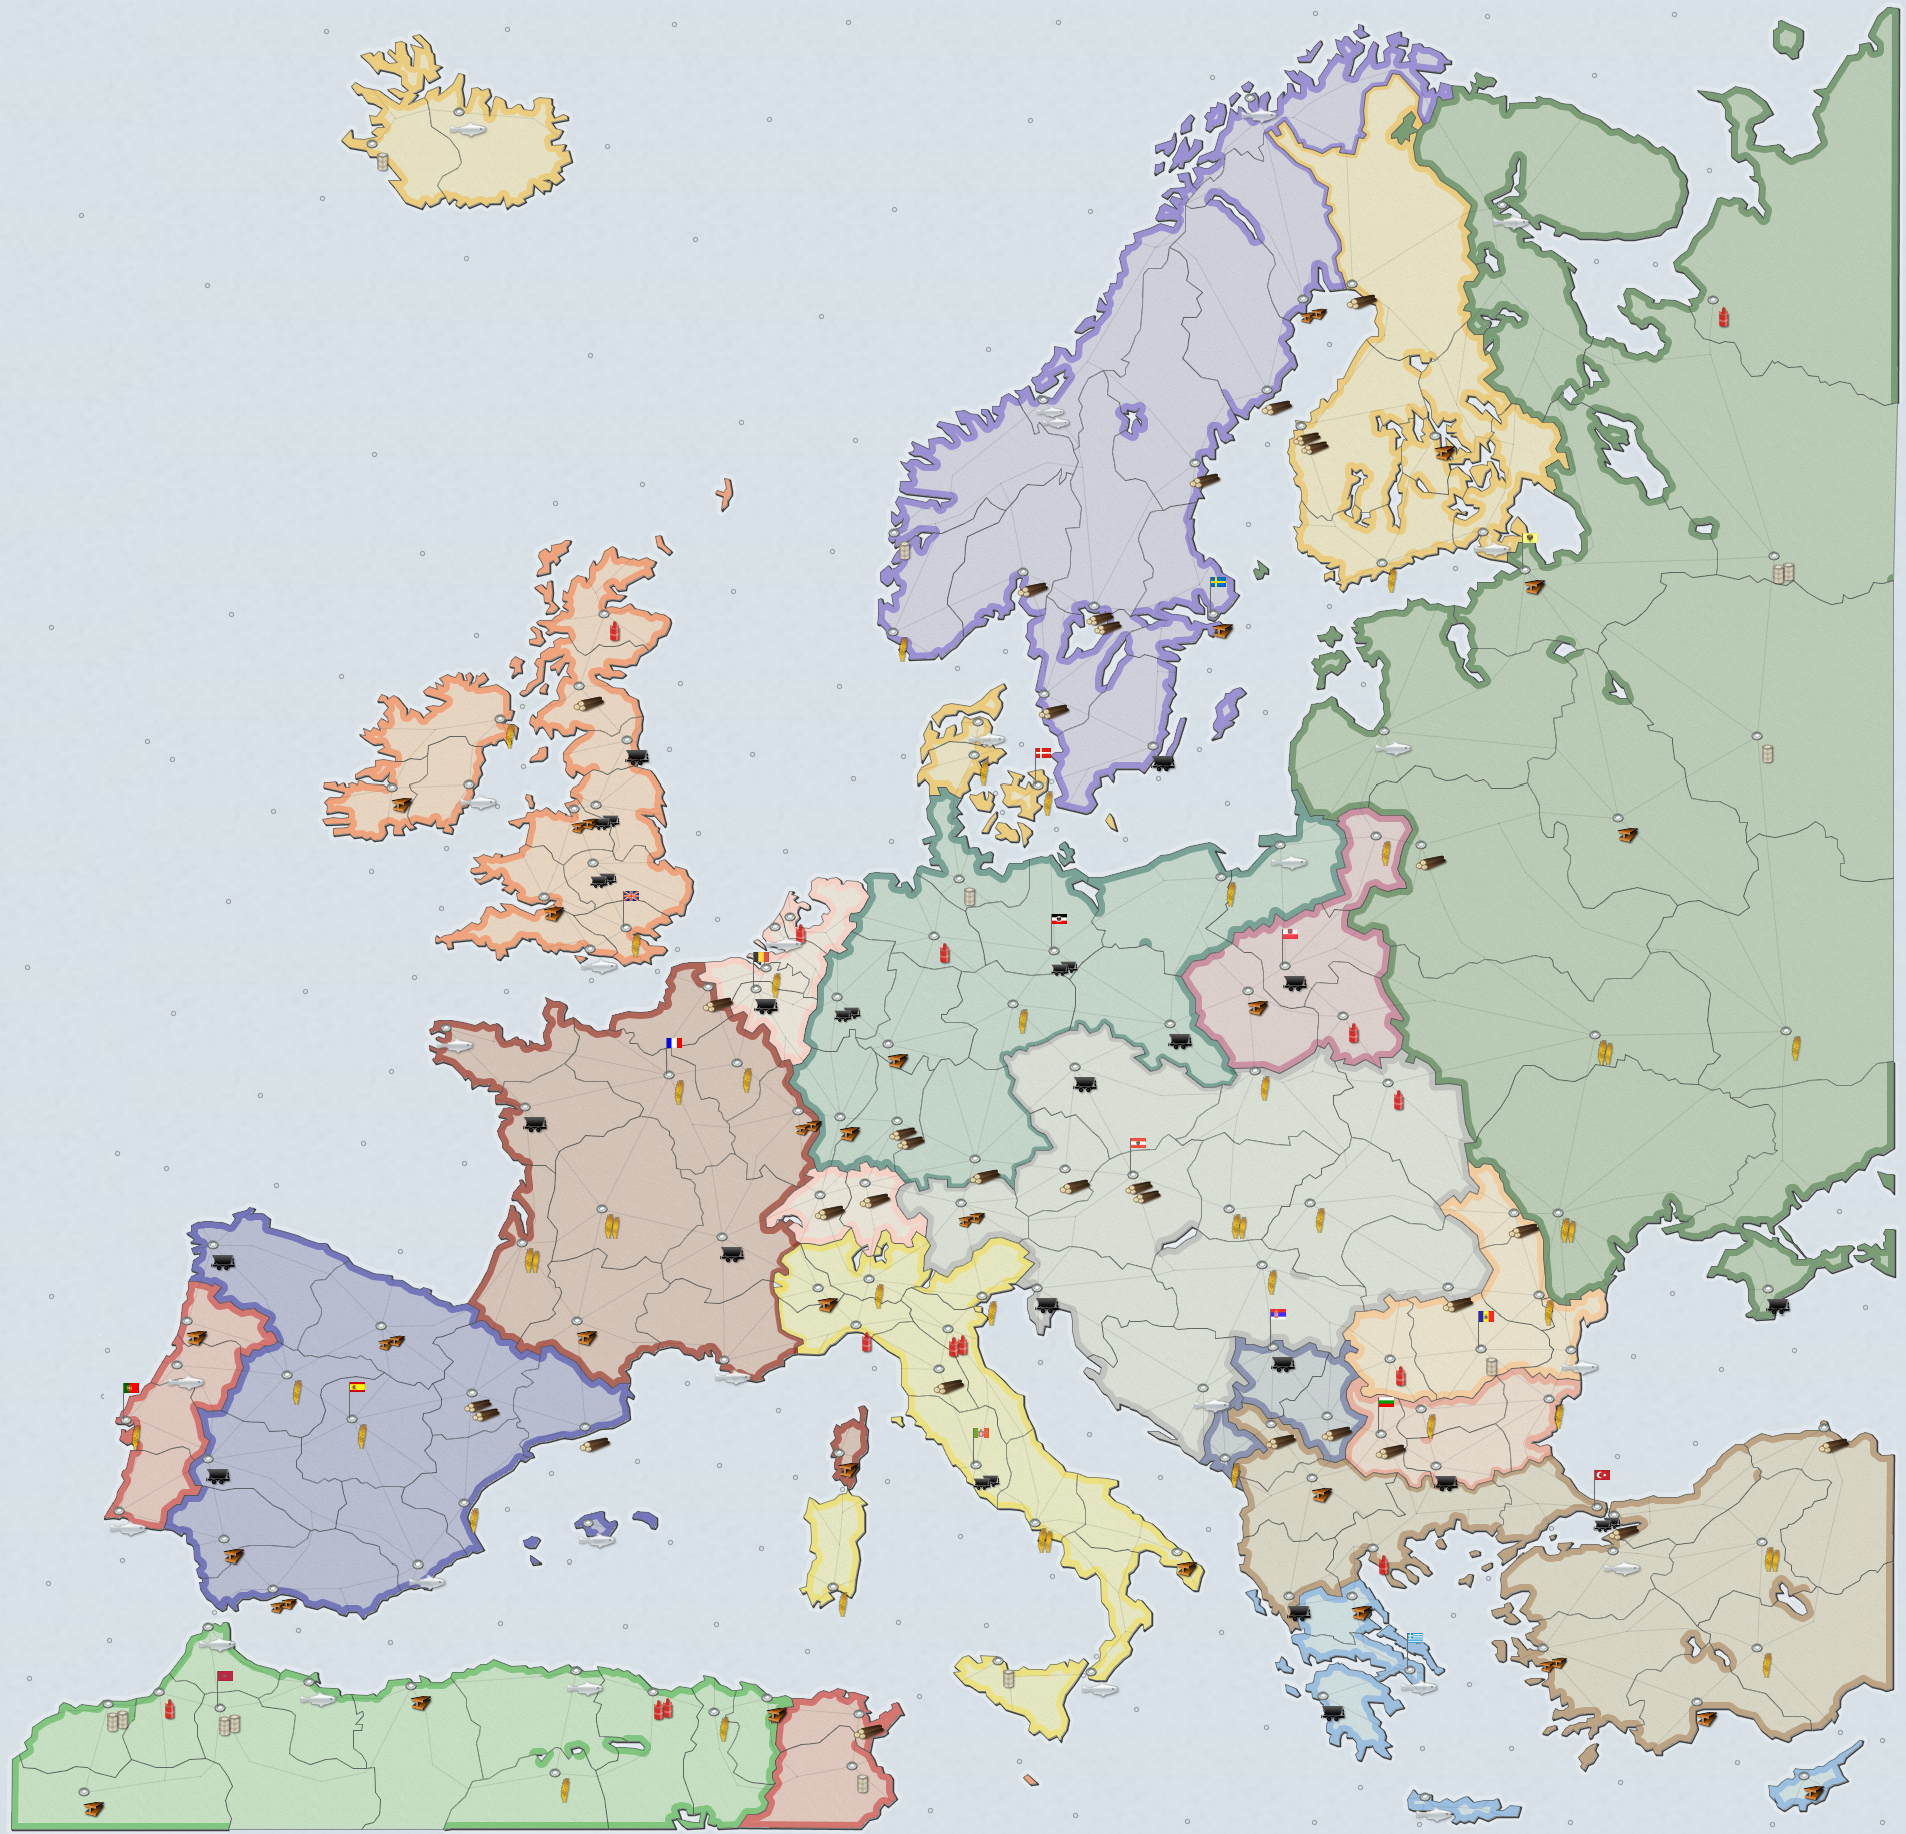 Europe 1914 Supremacy1914 Wiki Fandom Powered By Wikia